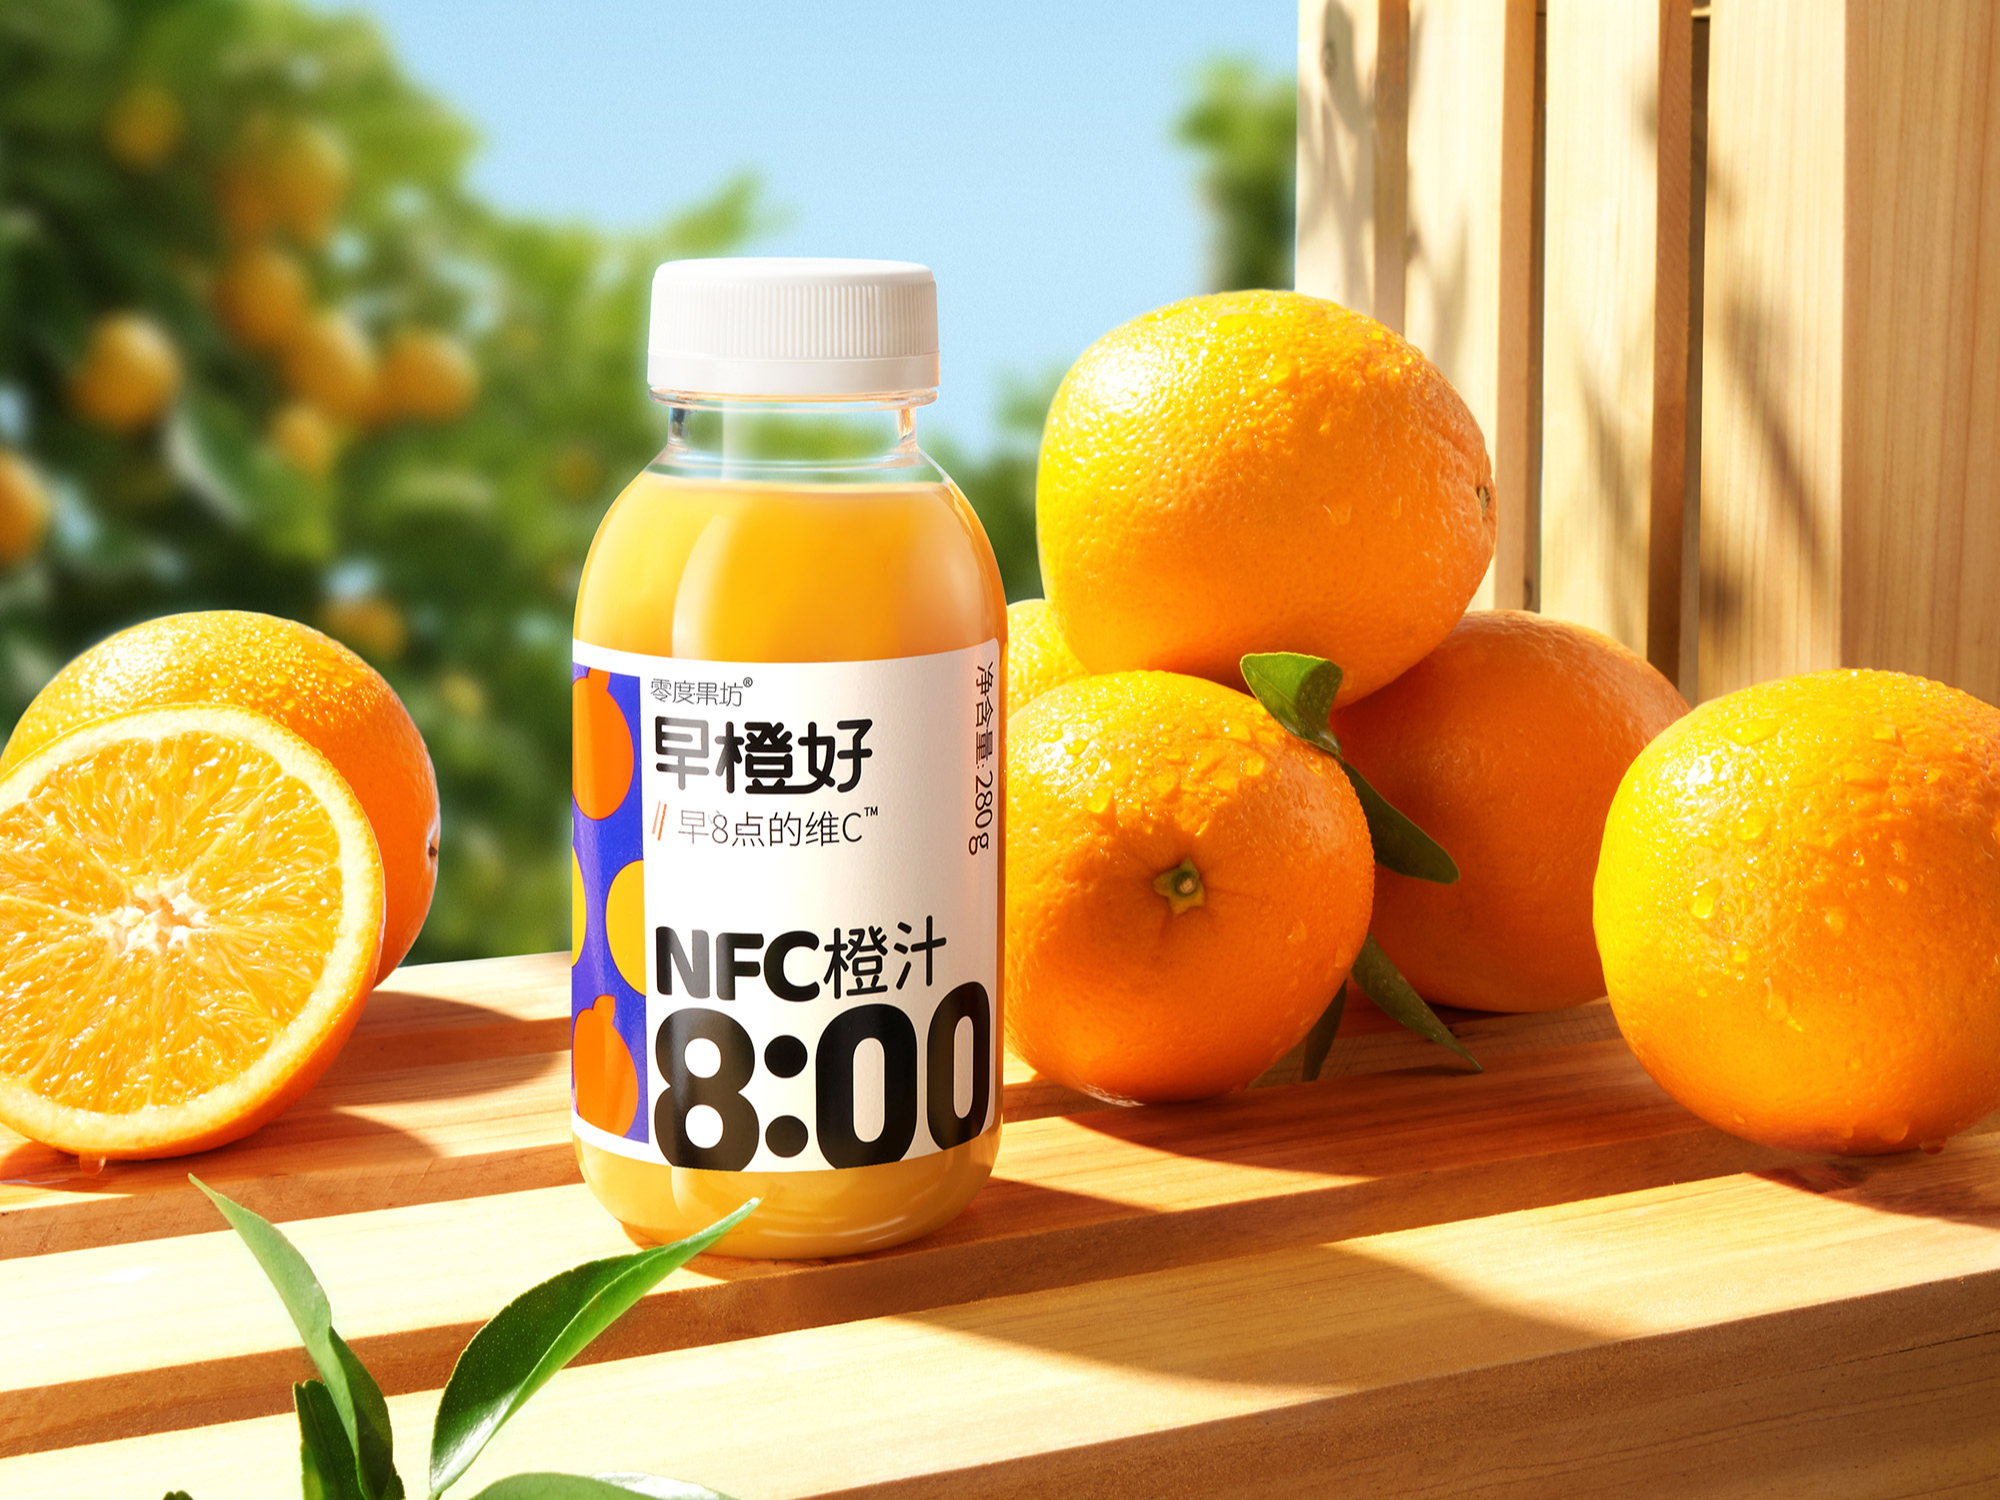 早橙好橙汁果汁饮品美食农场果园饮料产品场景图拍摄